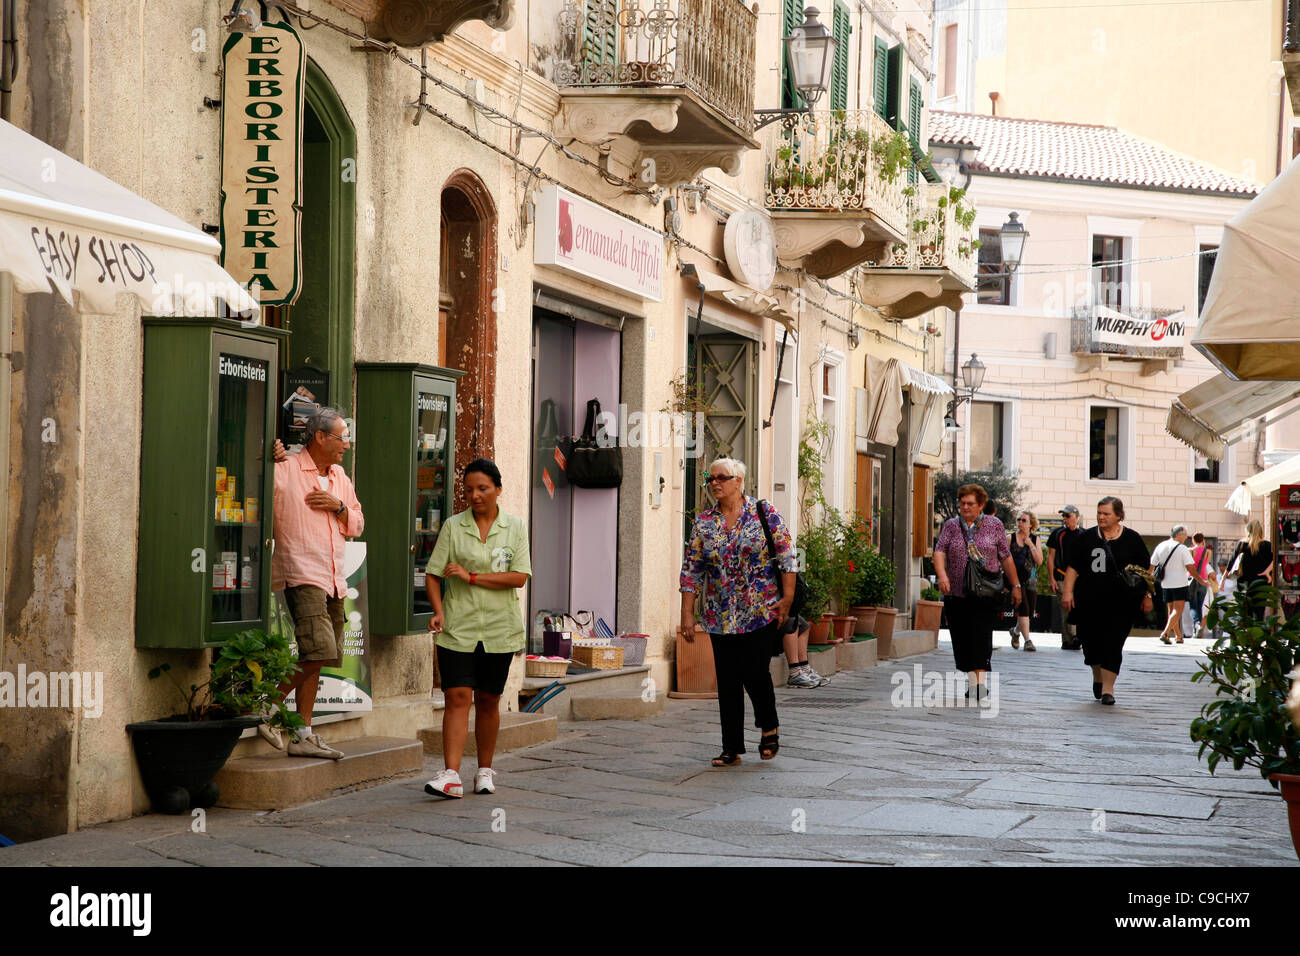 Street scene, La Maddalena, Sardinia, Italy Stock Photo - Alamy